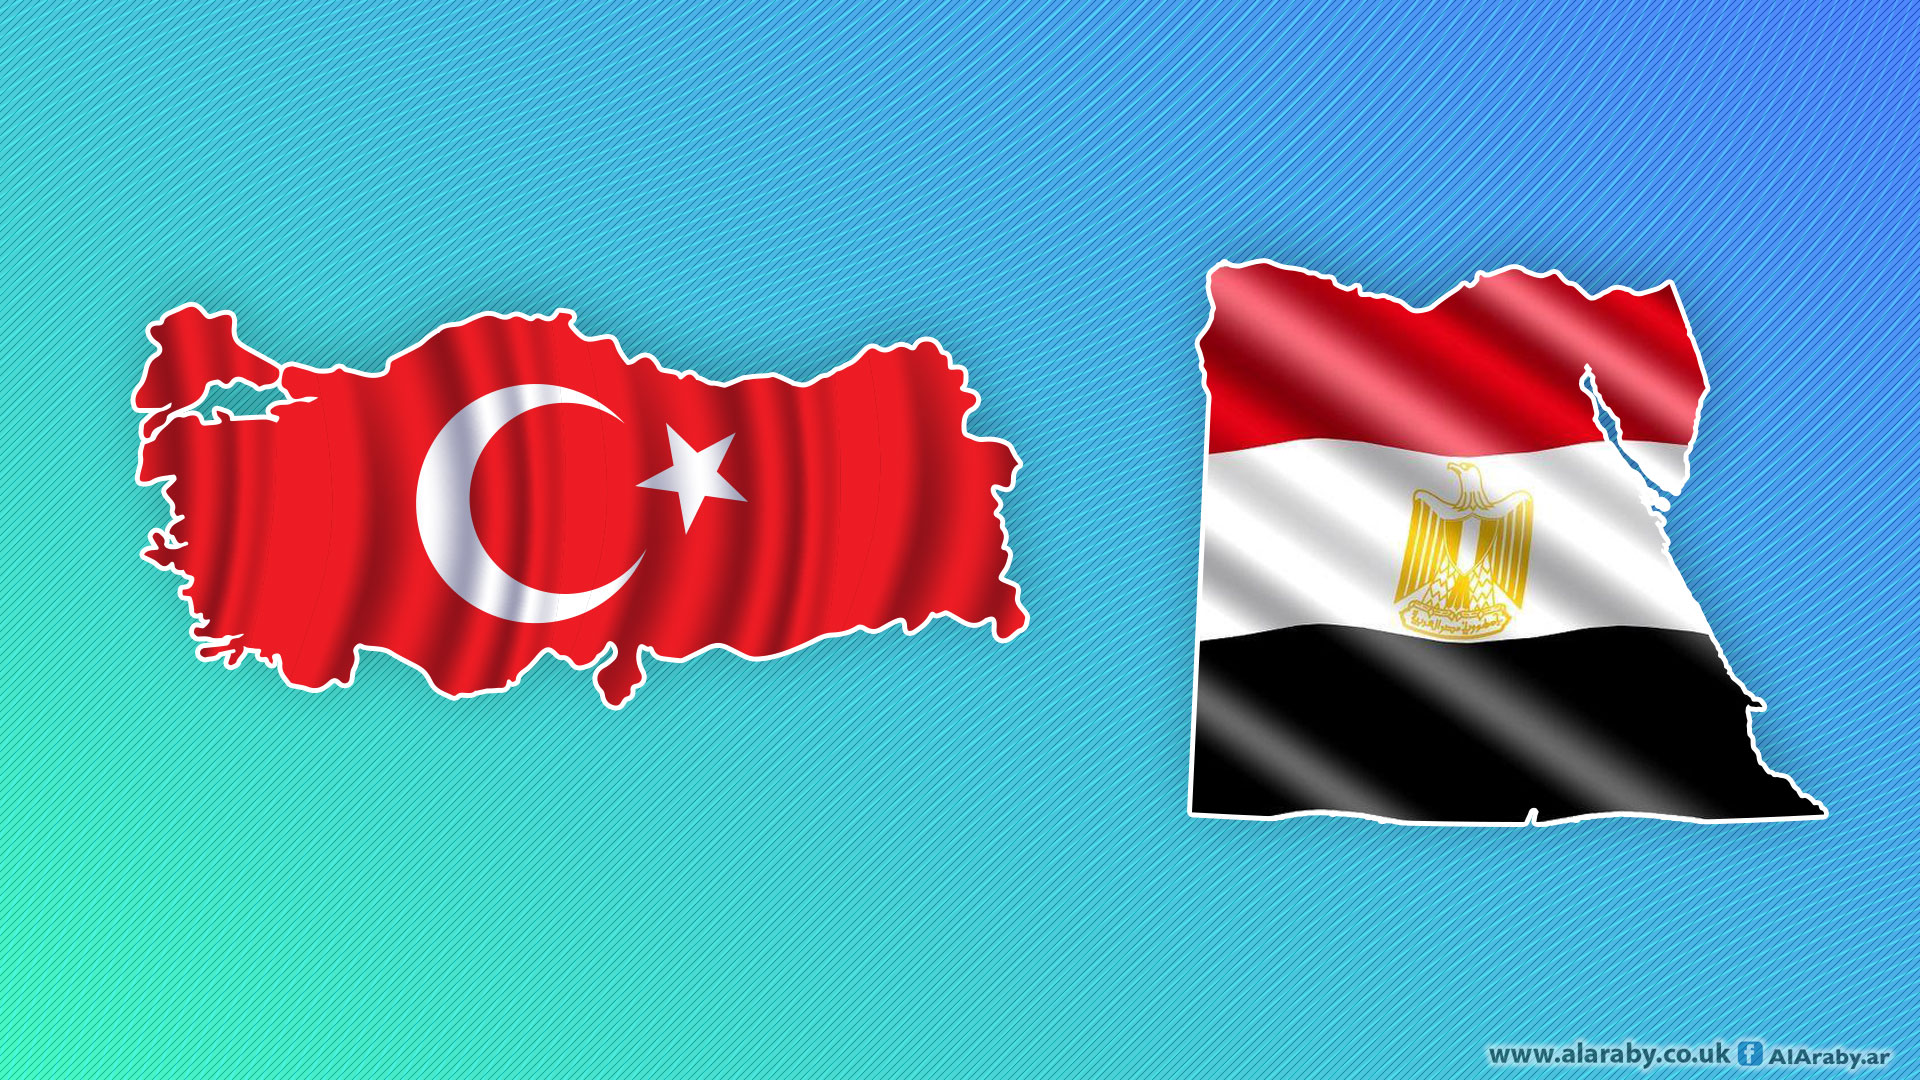 خبير استراتيجي: مصر وتركيا تسعيان لتعزيز التعاون والتصنيع العسكري